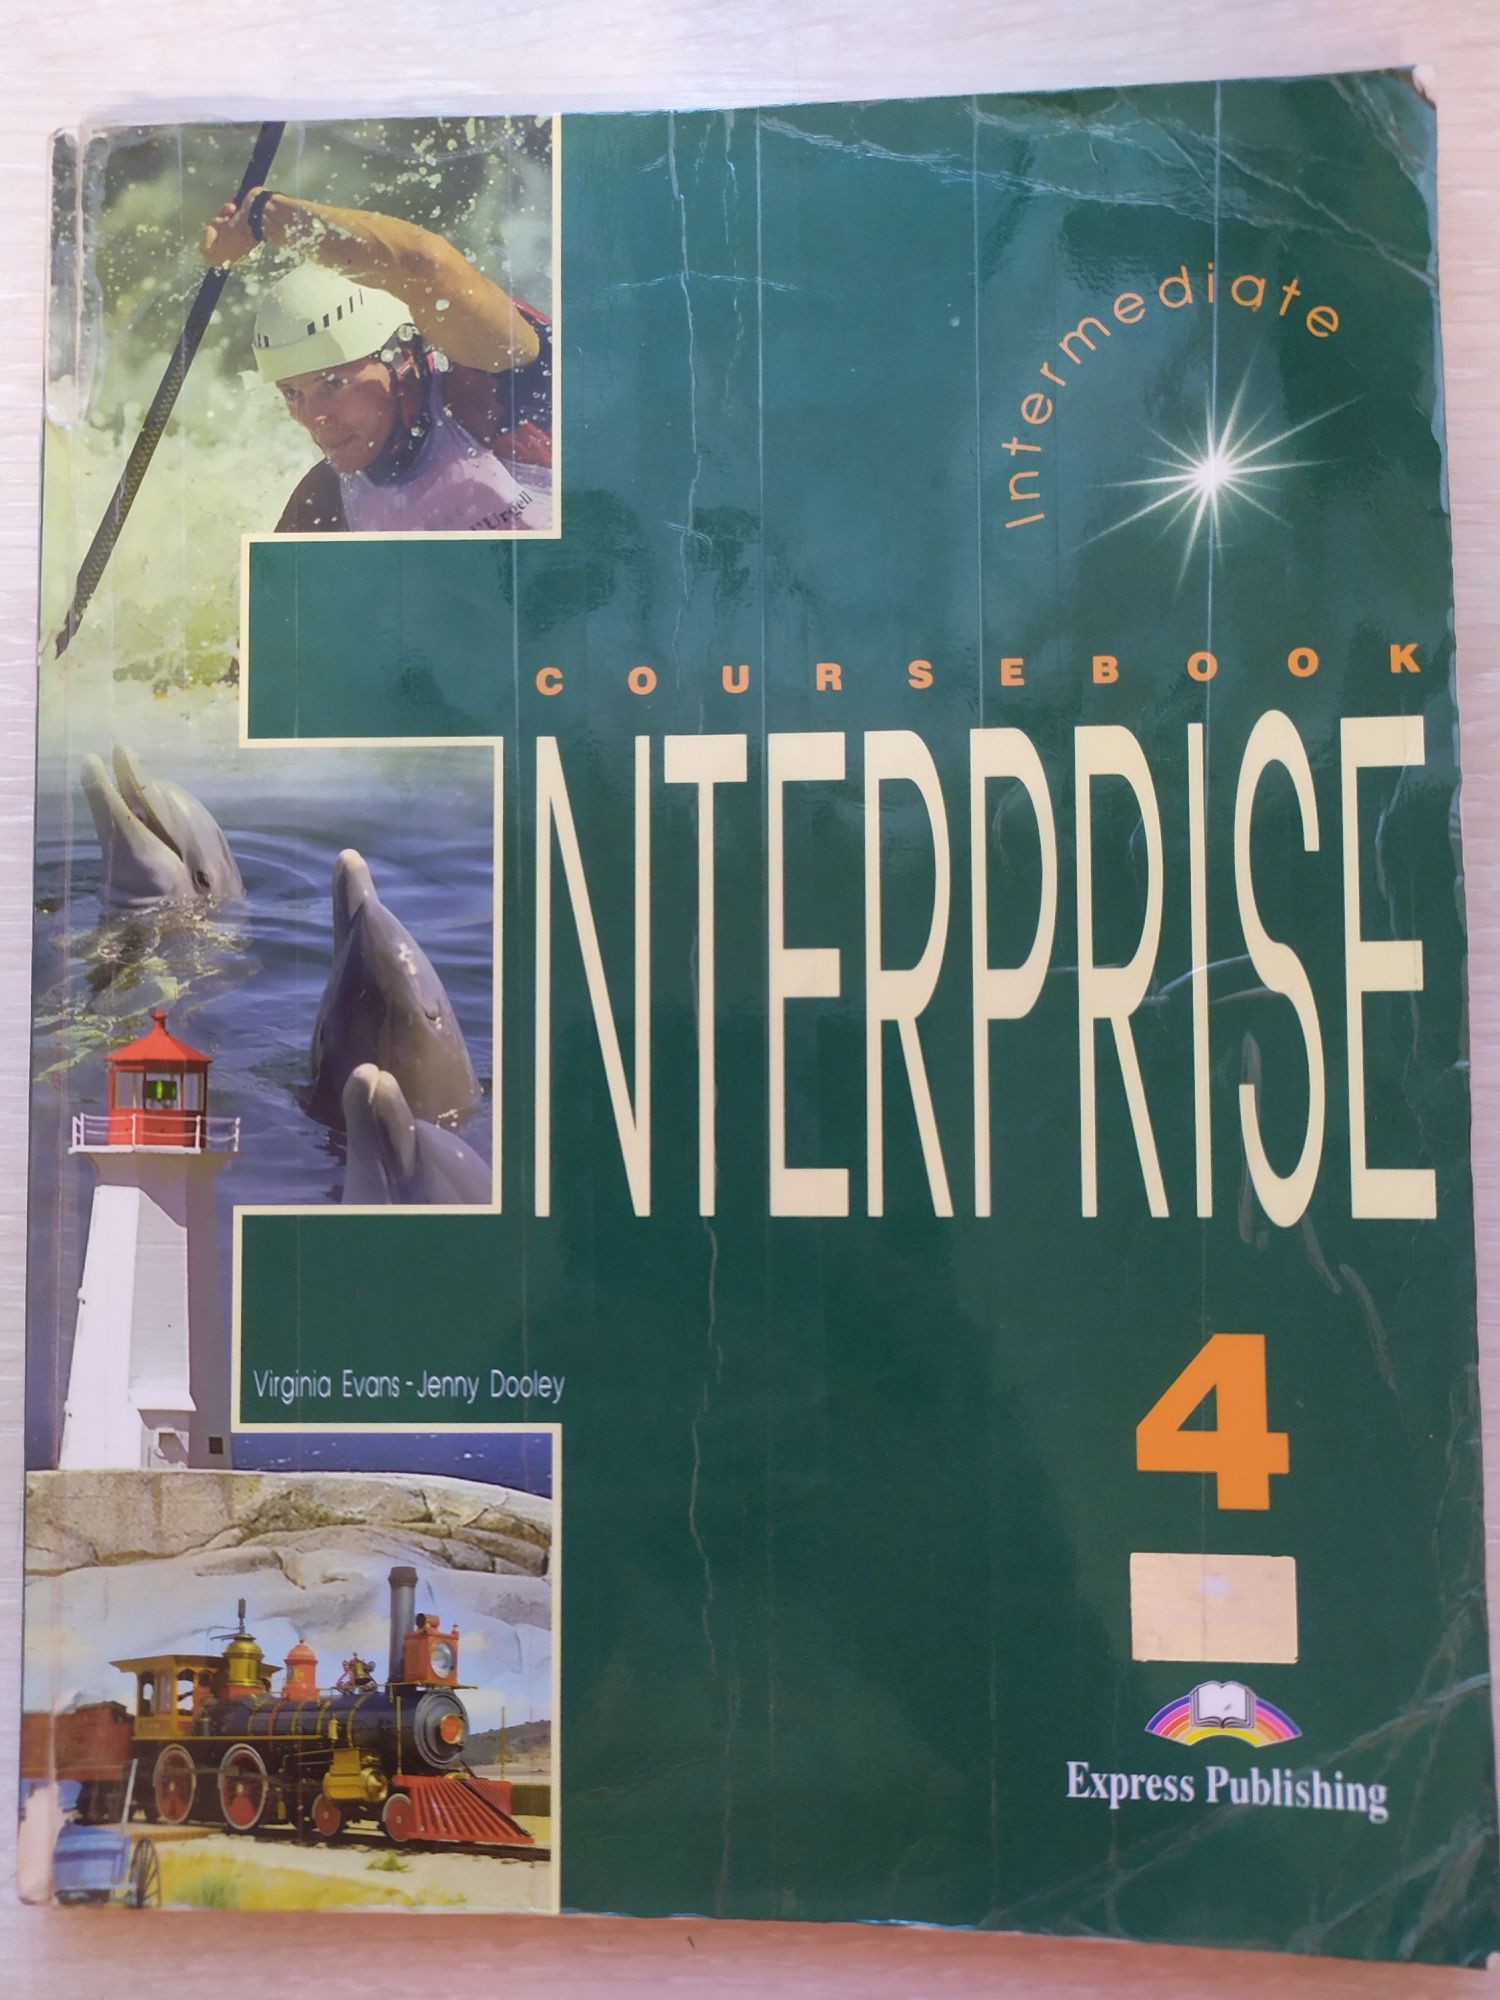 Enterprise 4 Course book